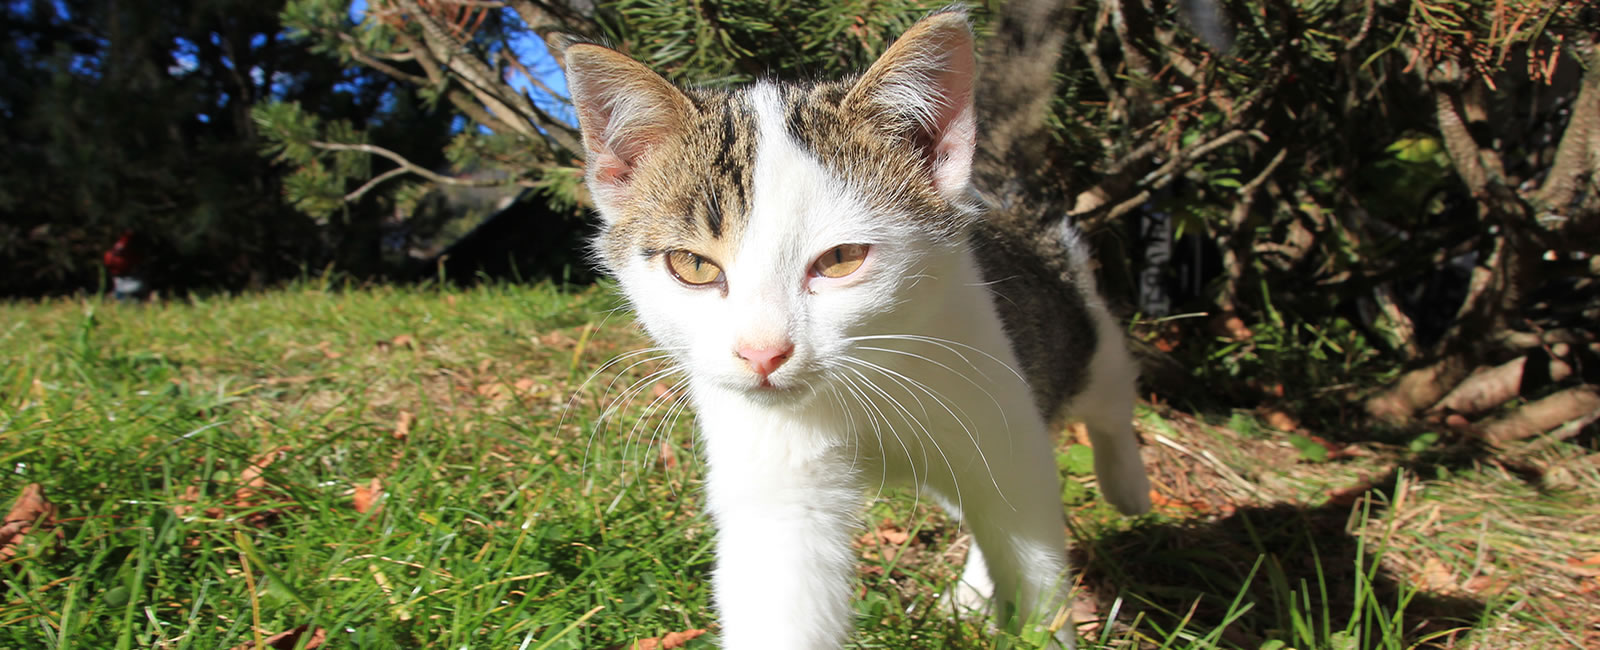 Unsere neugierige Katze Heino beim erkundschaften des Hofes. 